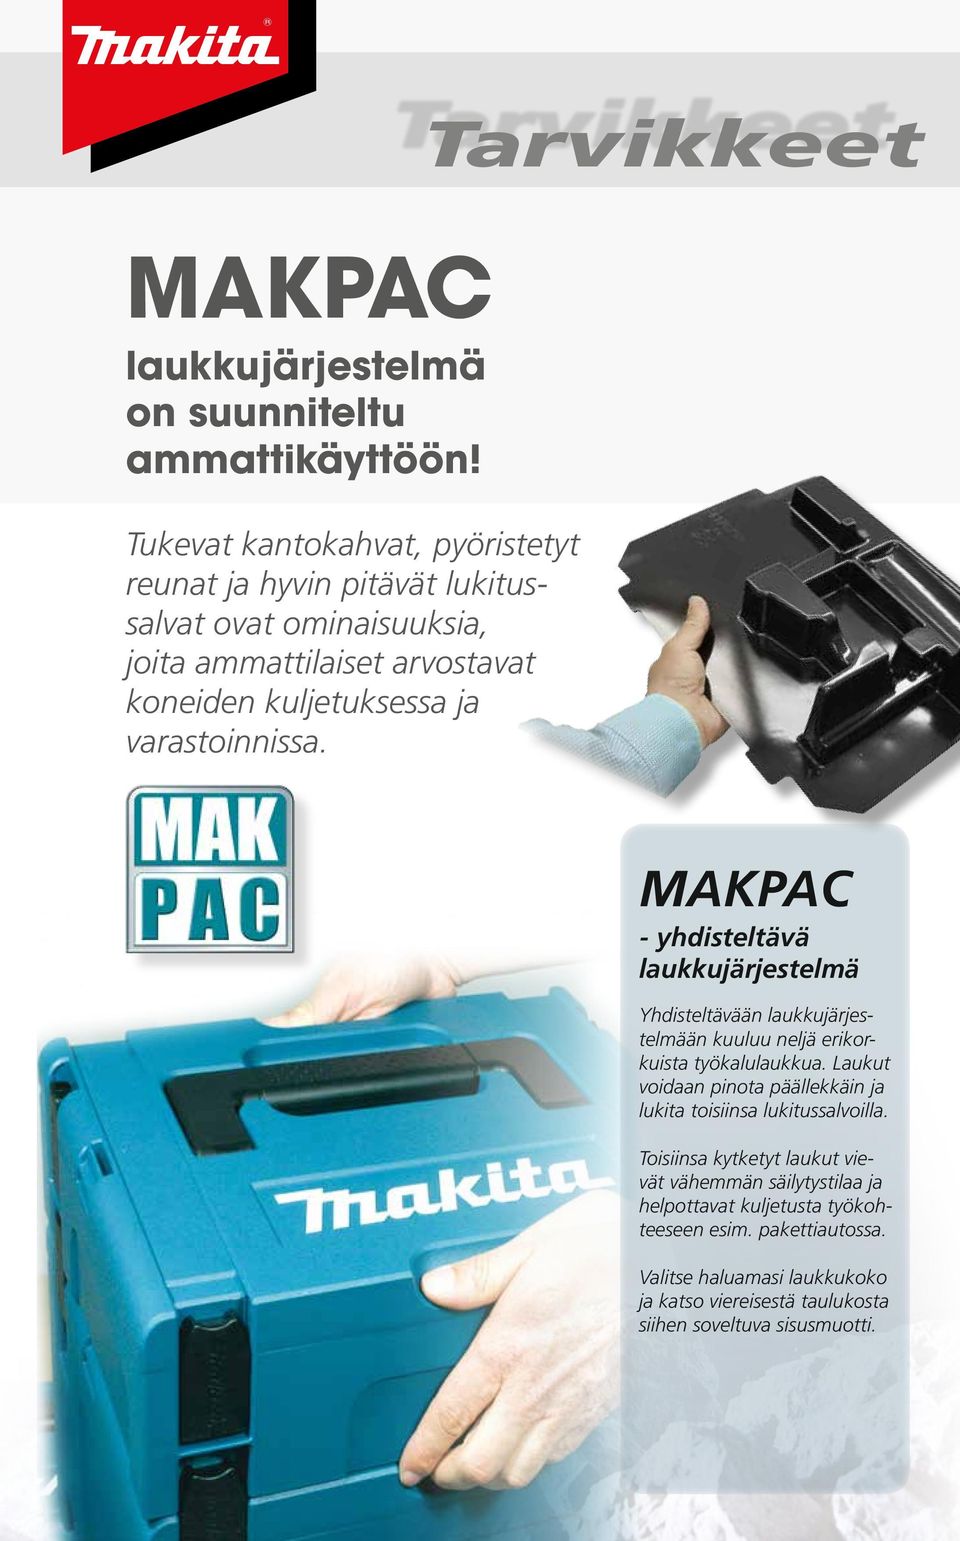 varastoinnissa. MAKPAC - yhdisteltävä laukkujärjestelmä Yhdisteltävään laukkujärjestelmään kuuluu neljä erikorkuista työkalulaukkua.